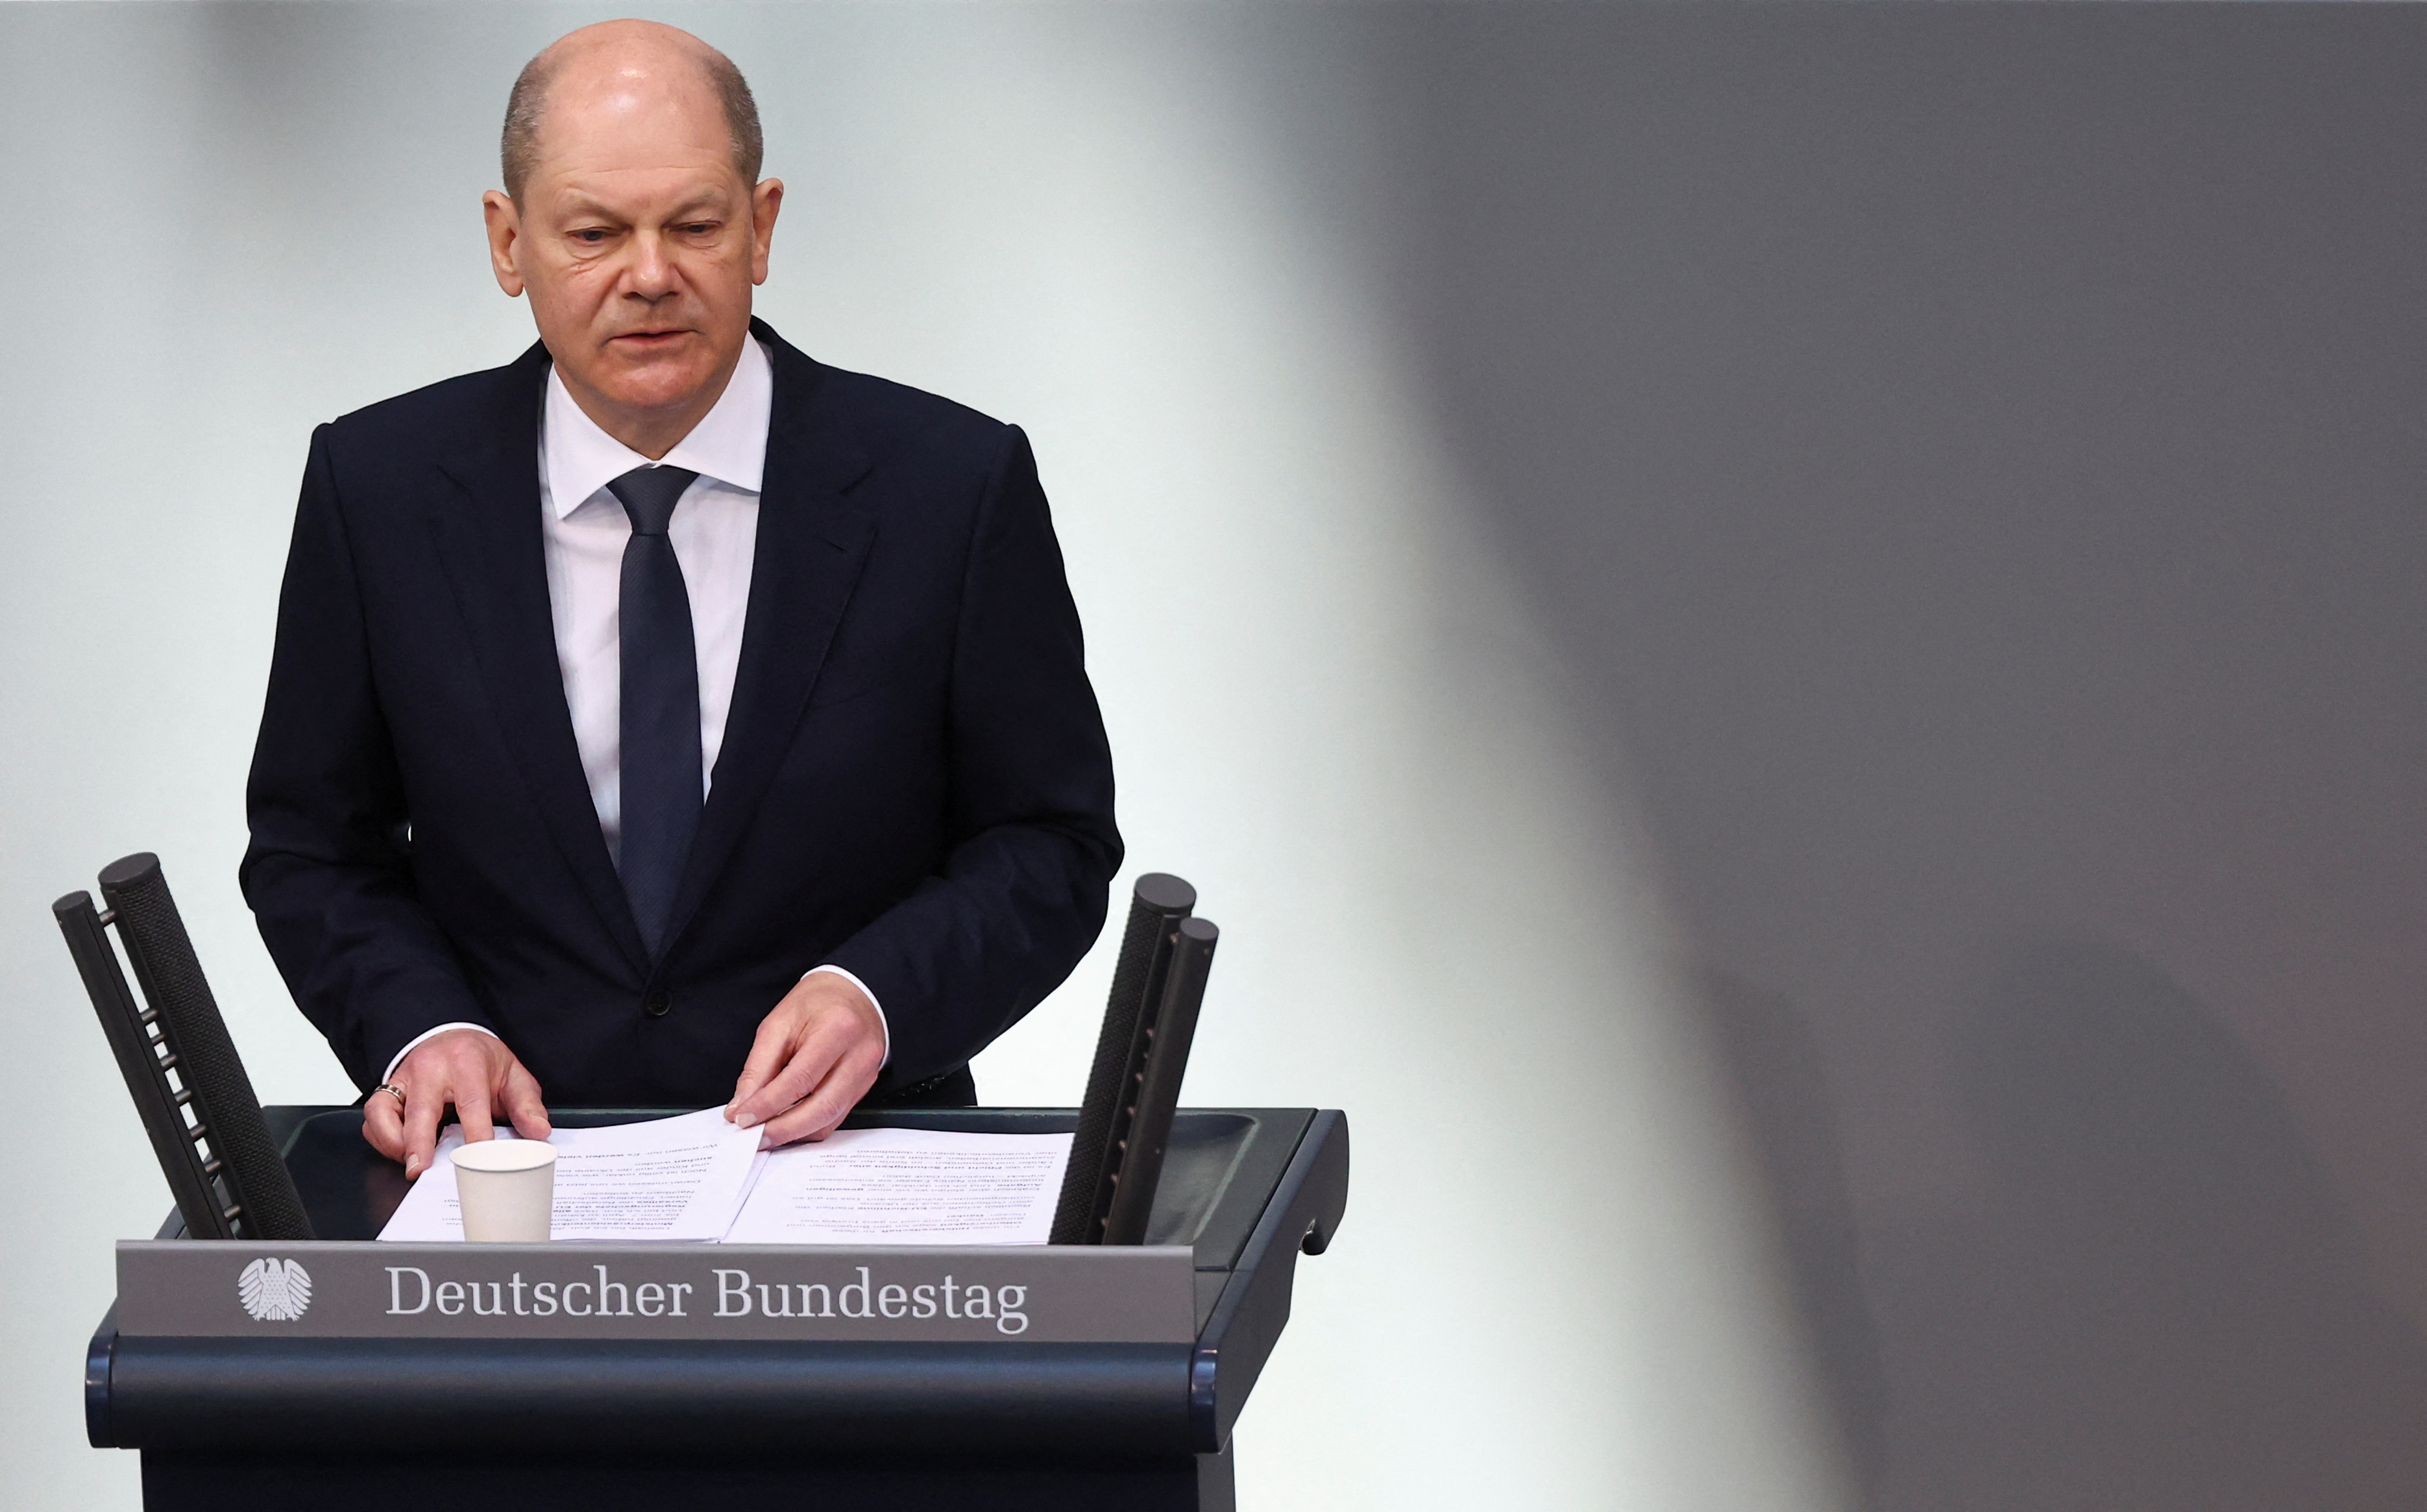 El canciller alemán, Olaf Scholz, habla durante una sesión presupuestaria de la cámara baja del parlamento alemán, el Bundestag, en Berlín, Alemania, el 23 de marzo de 2022. REUTERS/Lisi Niesner